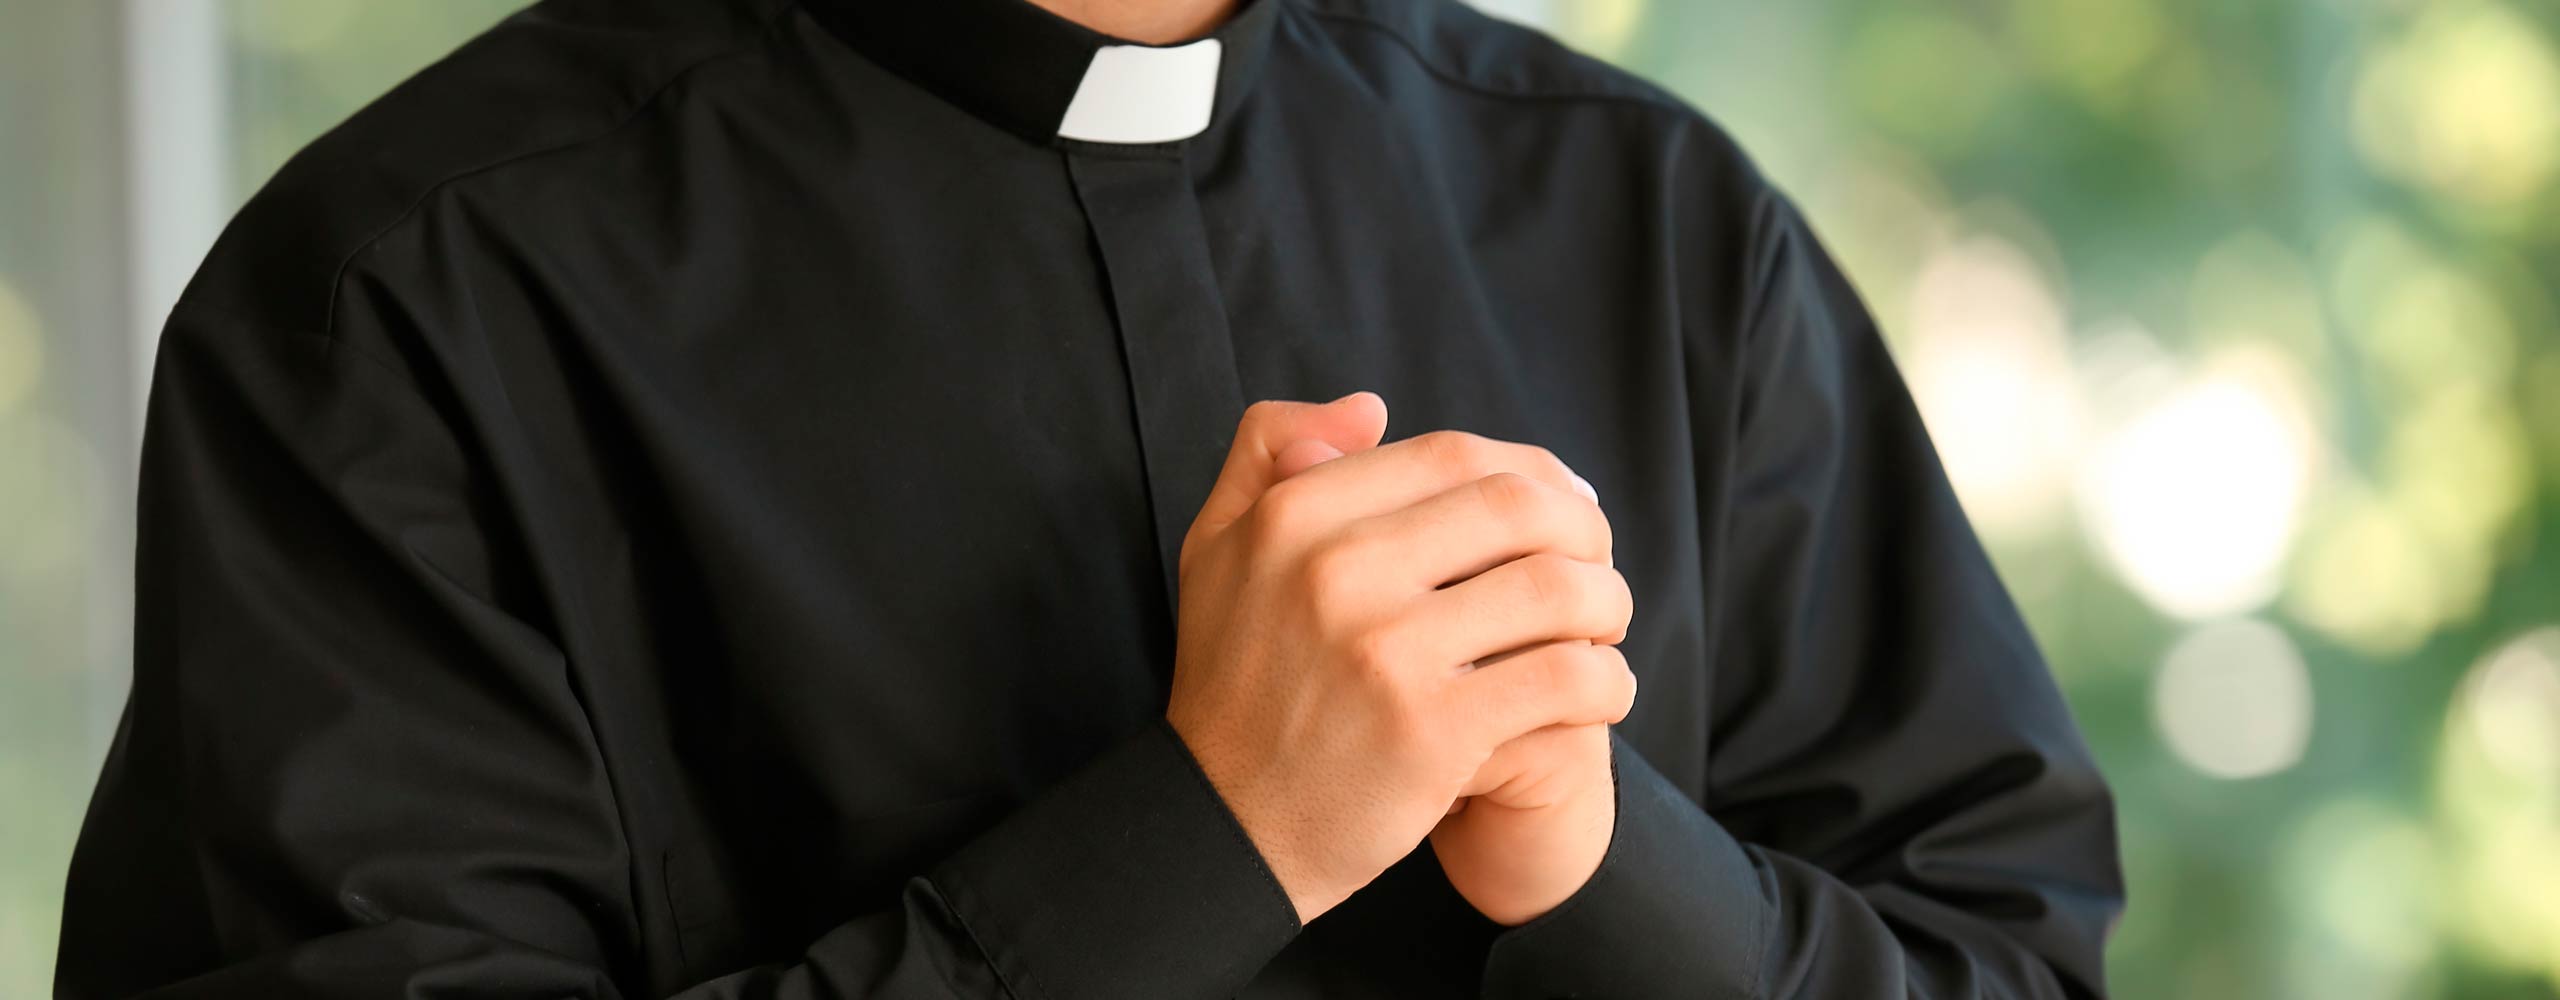 Investigación documenta casi 5.000 víctimas de abuso sexual en la Iglesia Católica de Portugal